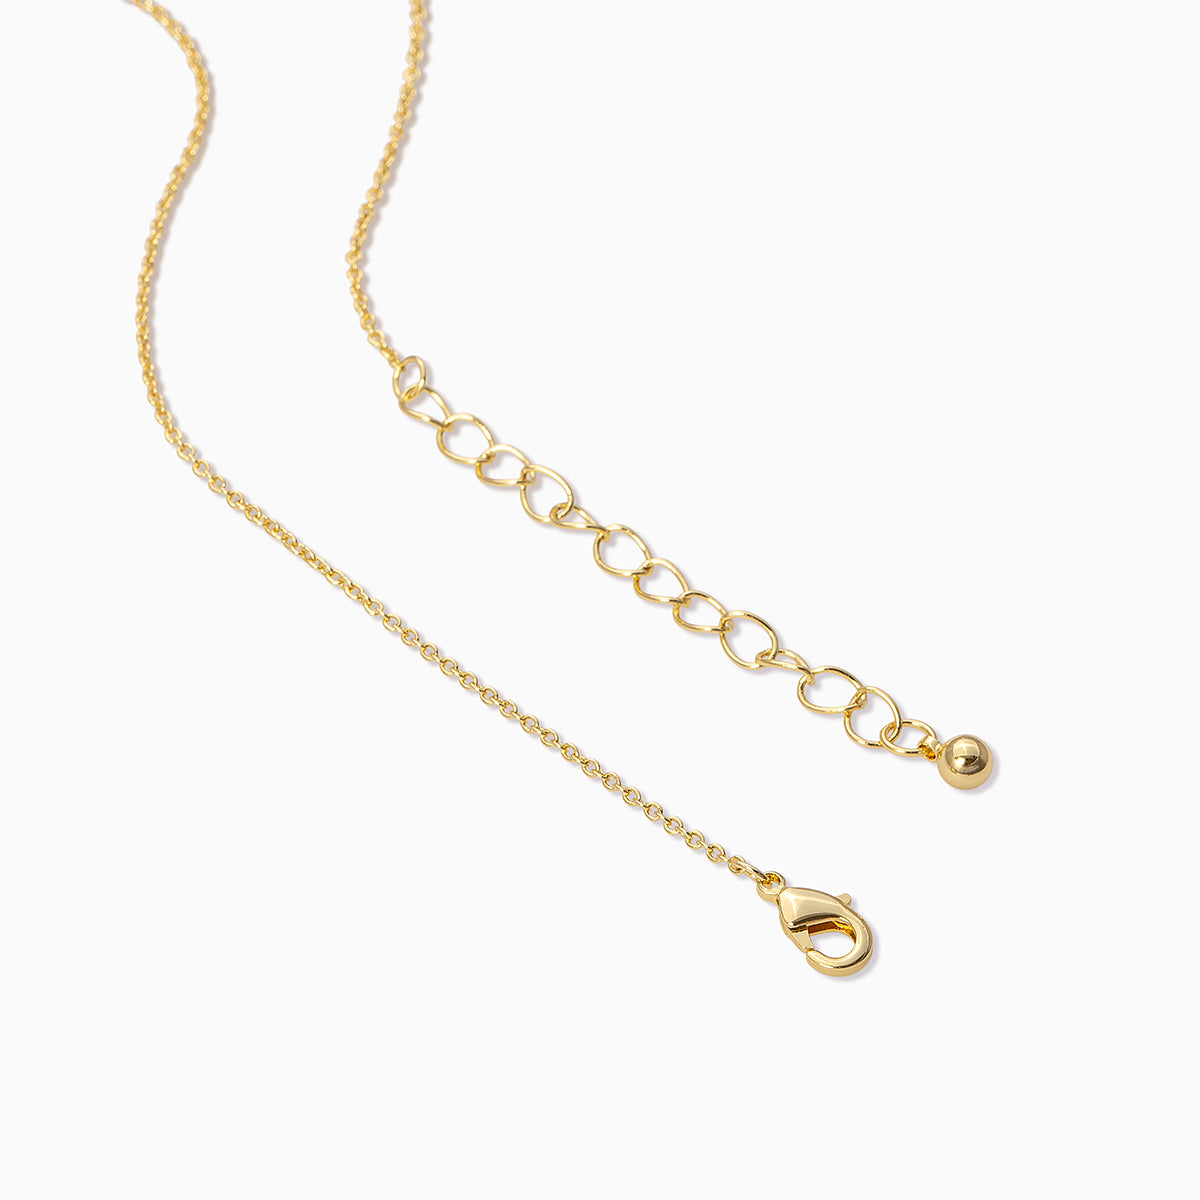 Zipper necklace – Lestrouvaillesdejen